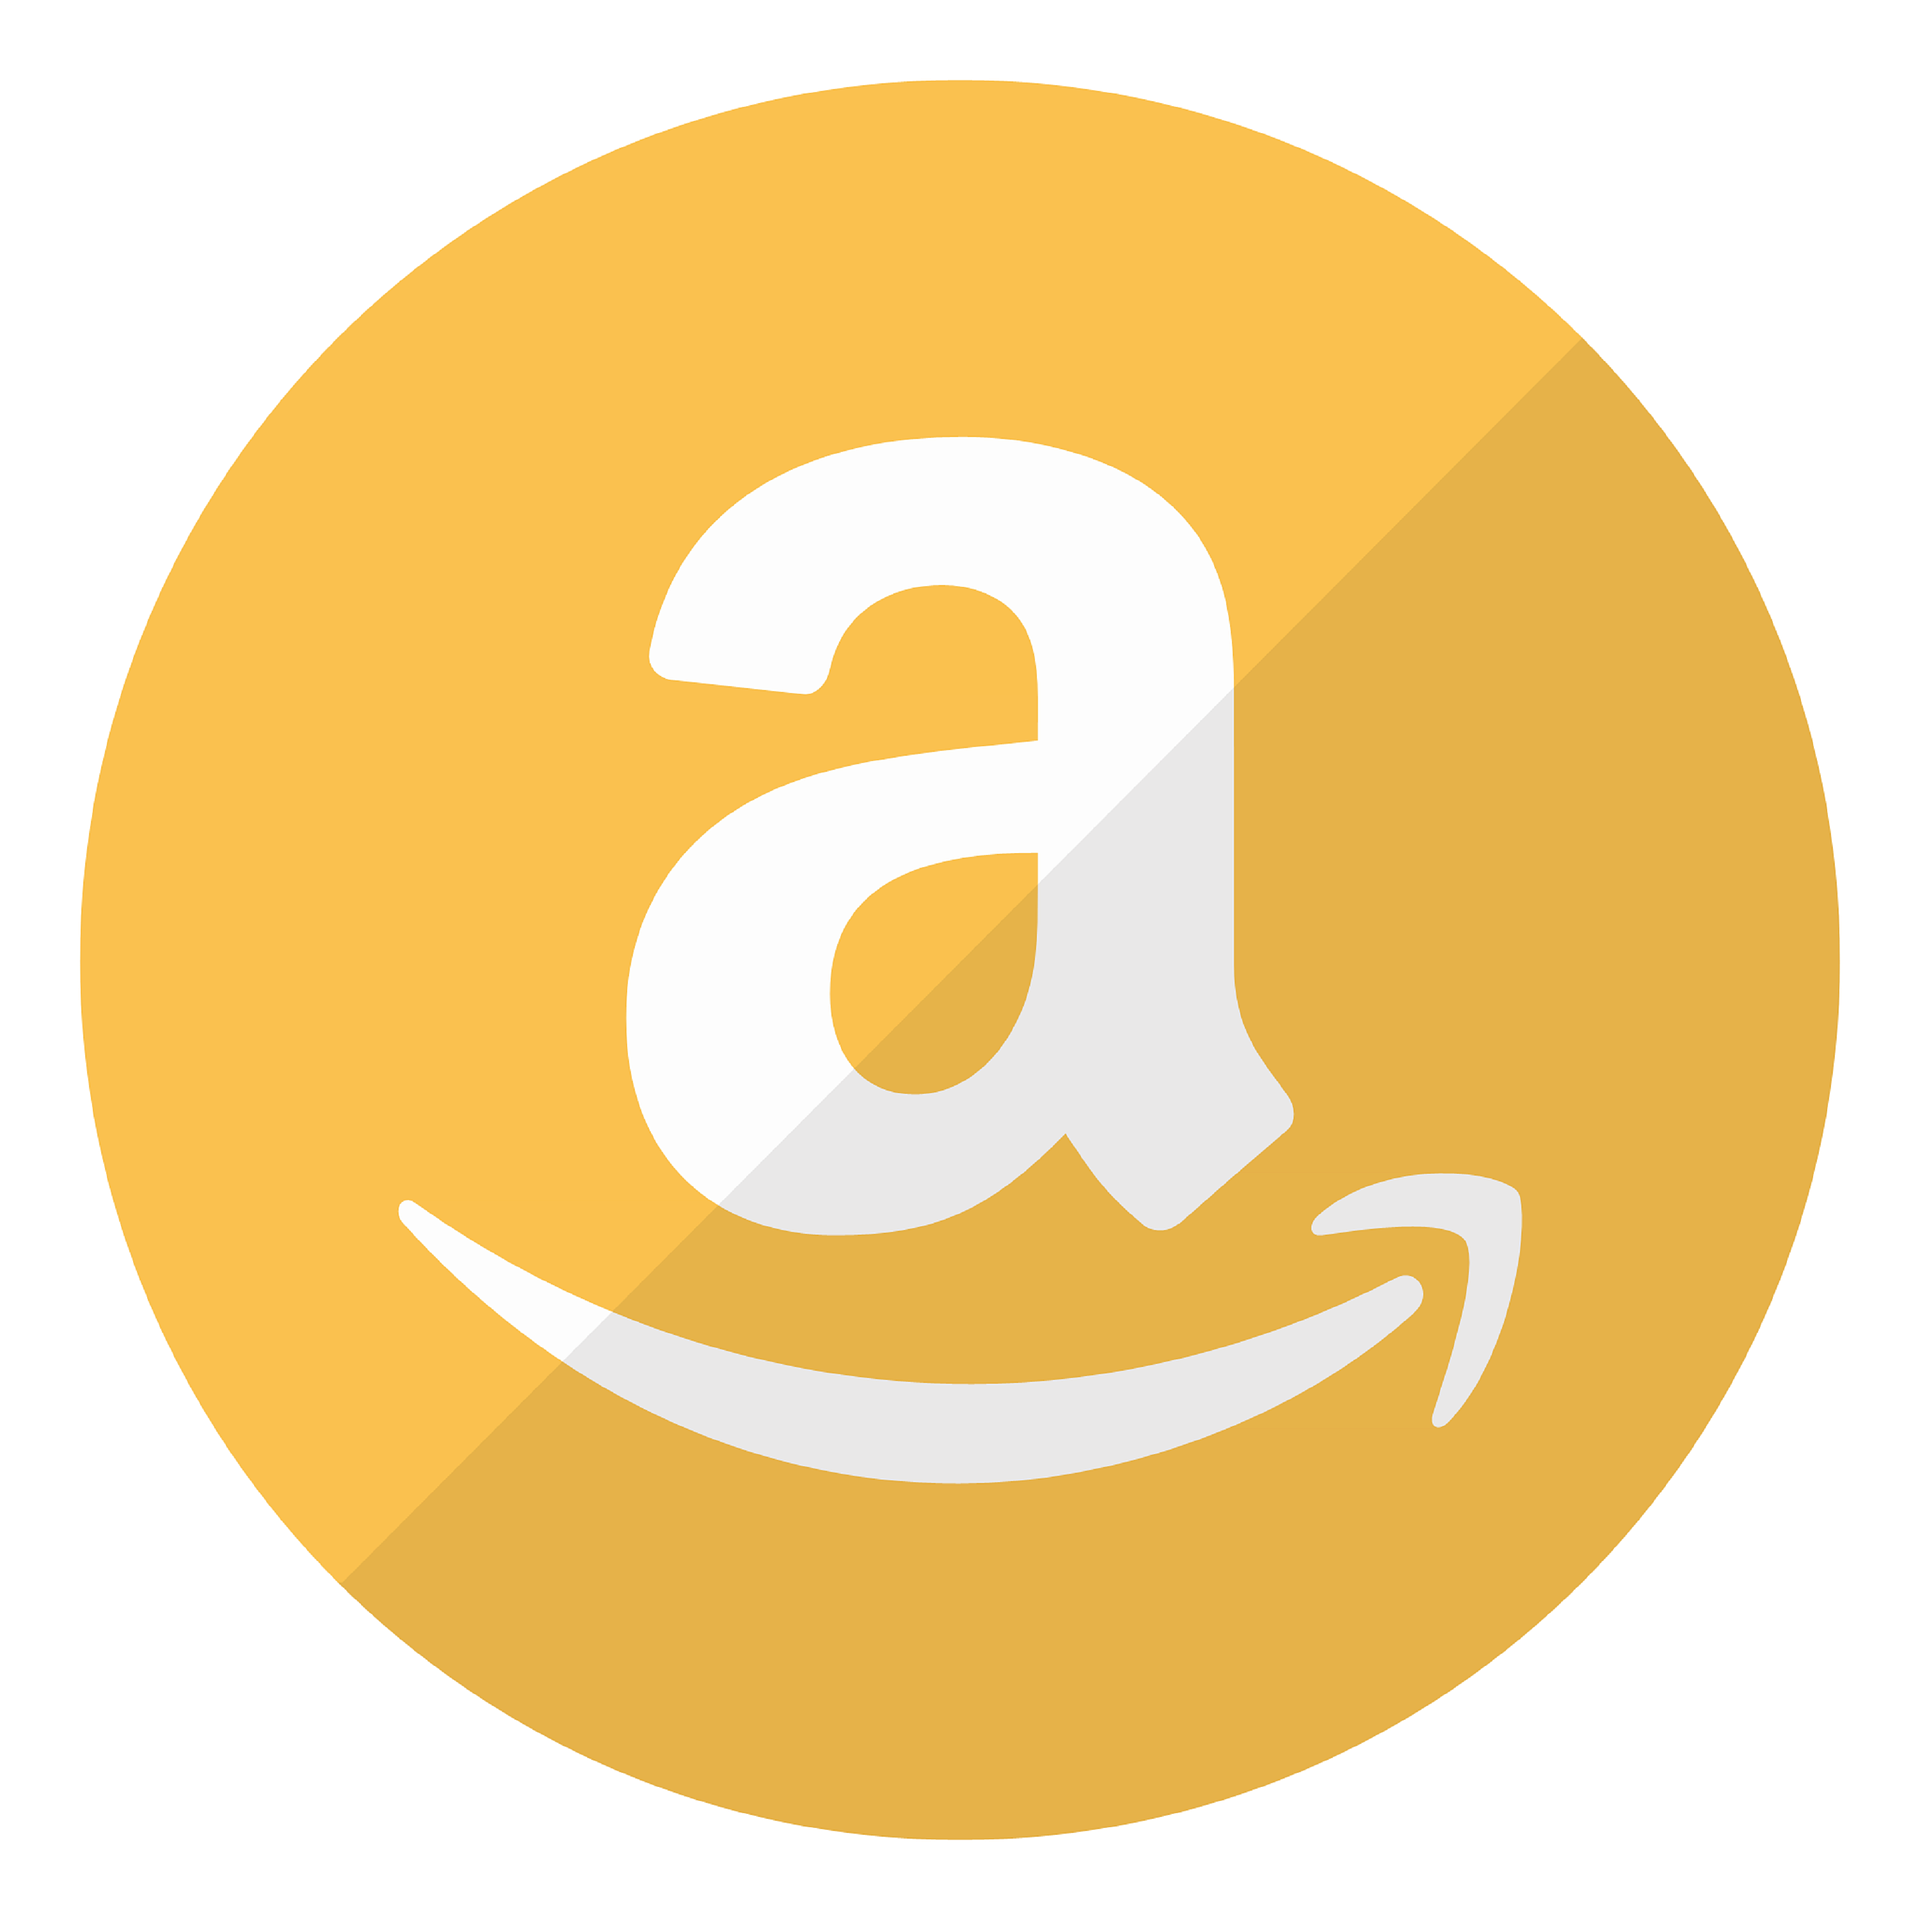 Contraffazione, Amazon reclama decisioni più drastiche e condivisione di informazione